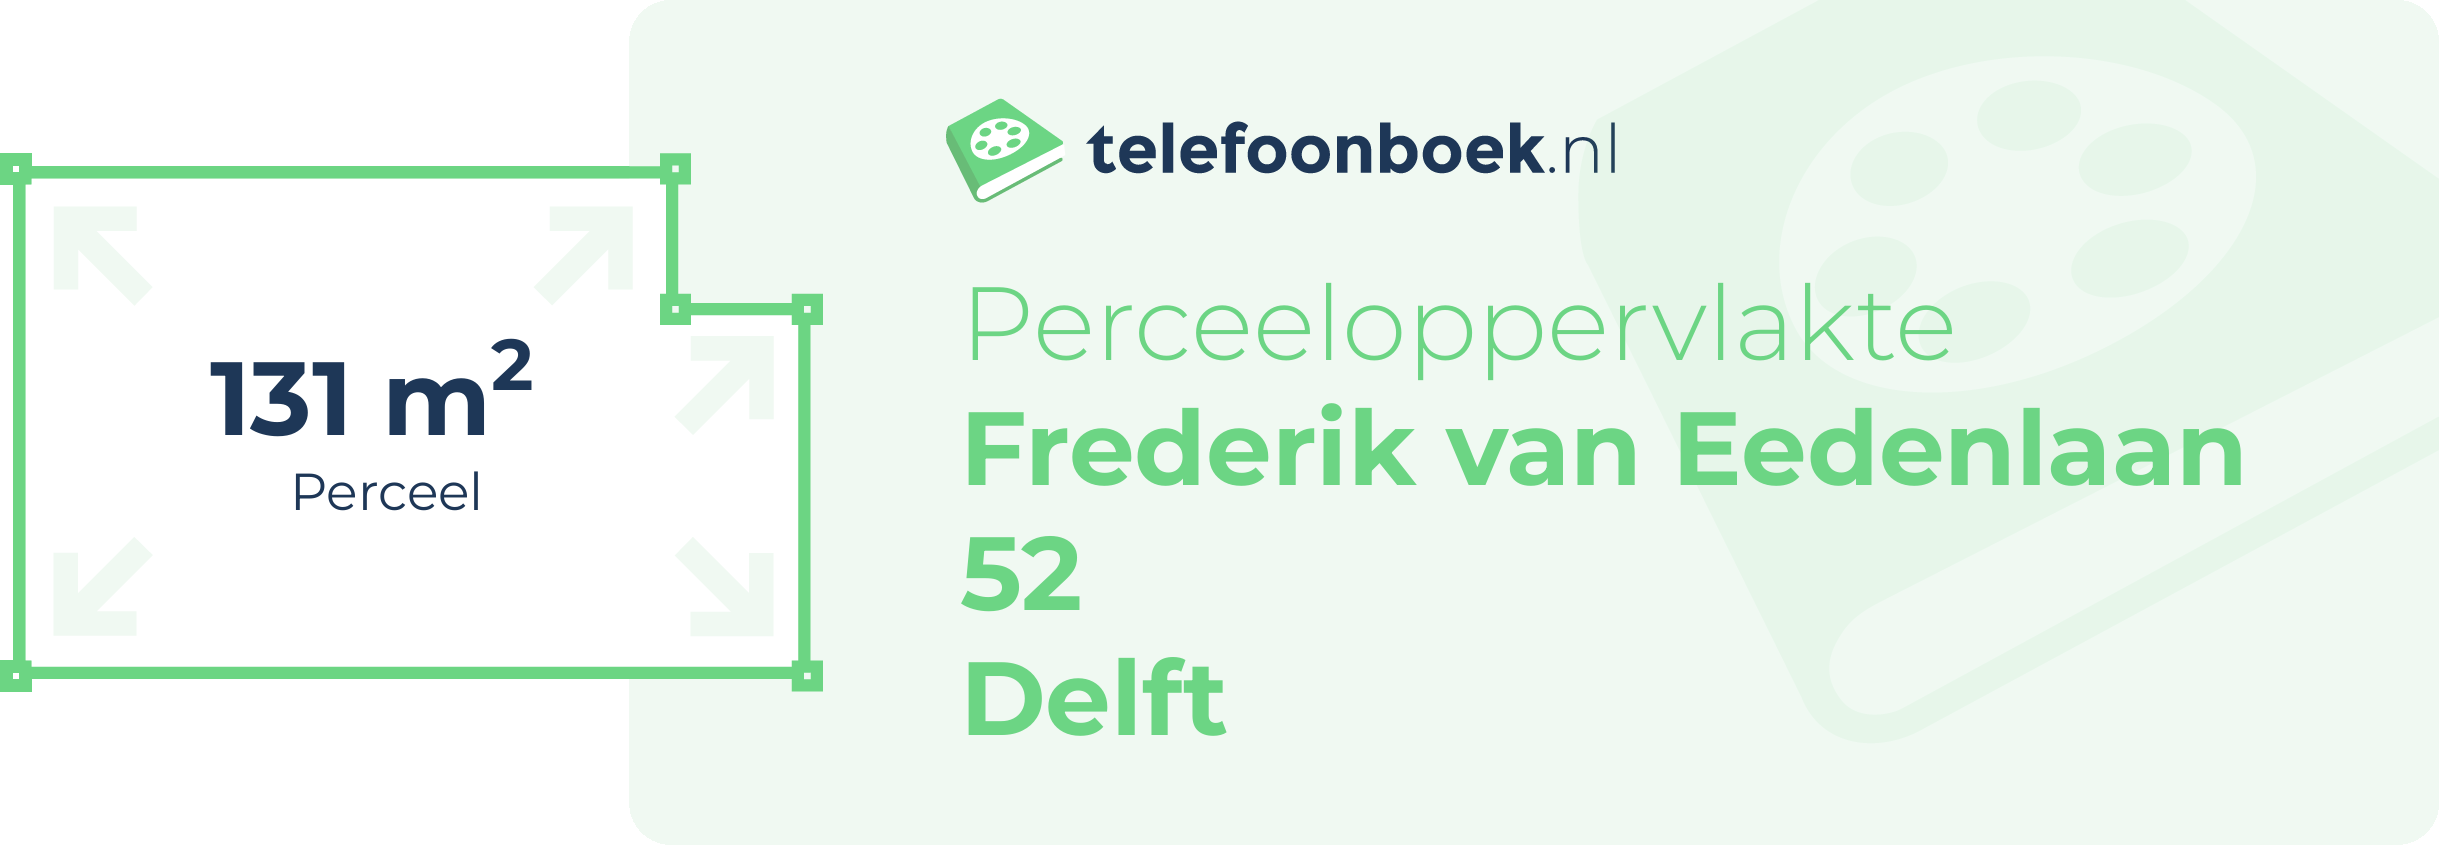 Perceeloppervlakte Frederik Van Eedenlaan 52 Delft